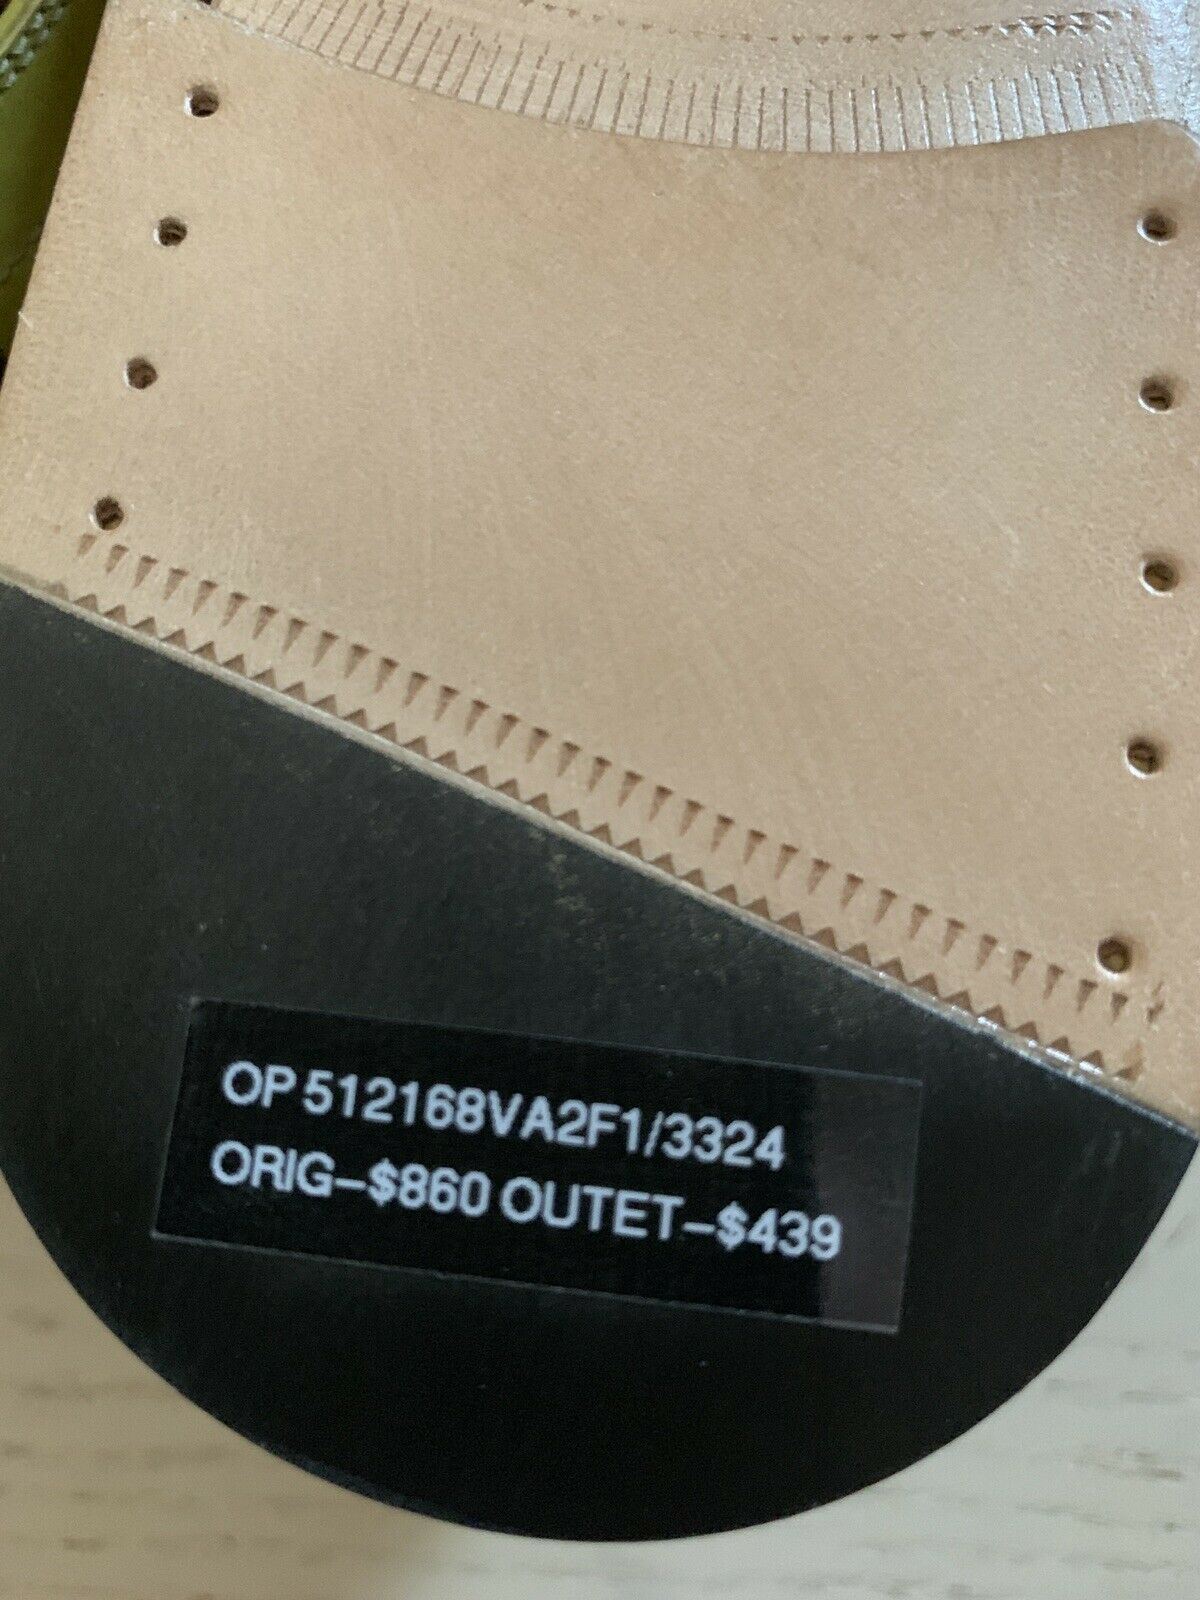 NIB $860 Bottega Veneta Mens Leather Shoes Color Chamomile 11 US ( 44 Eu ) Italy